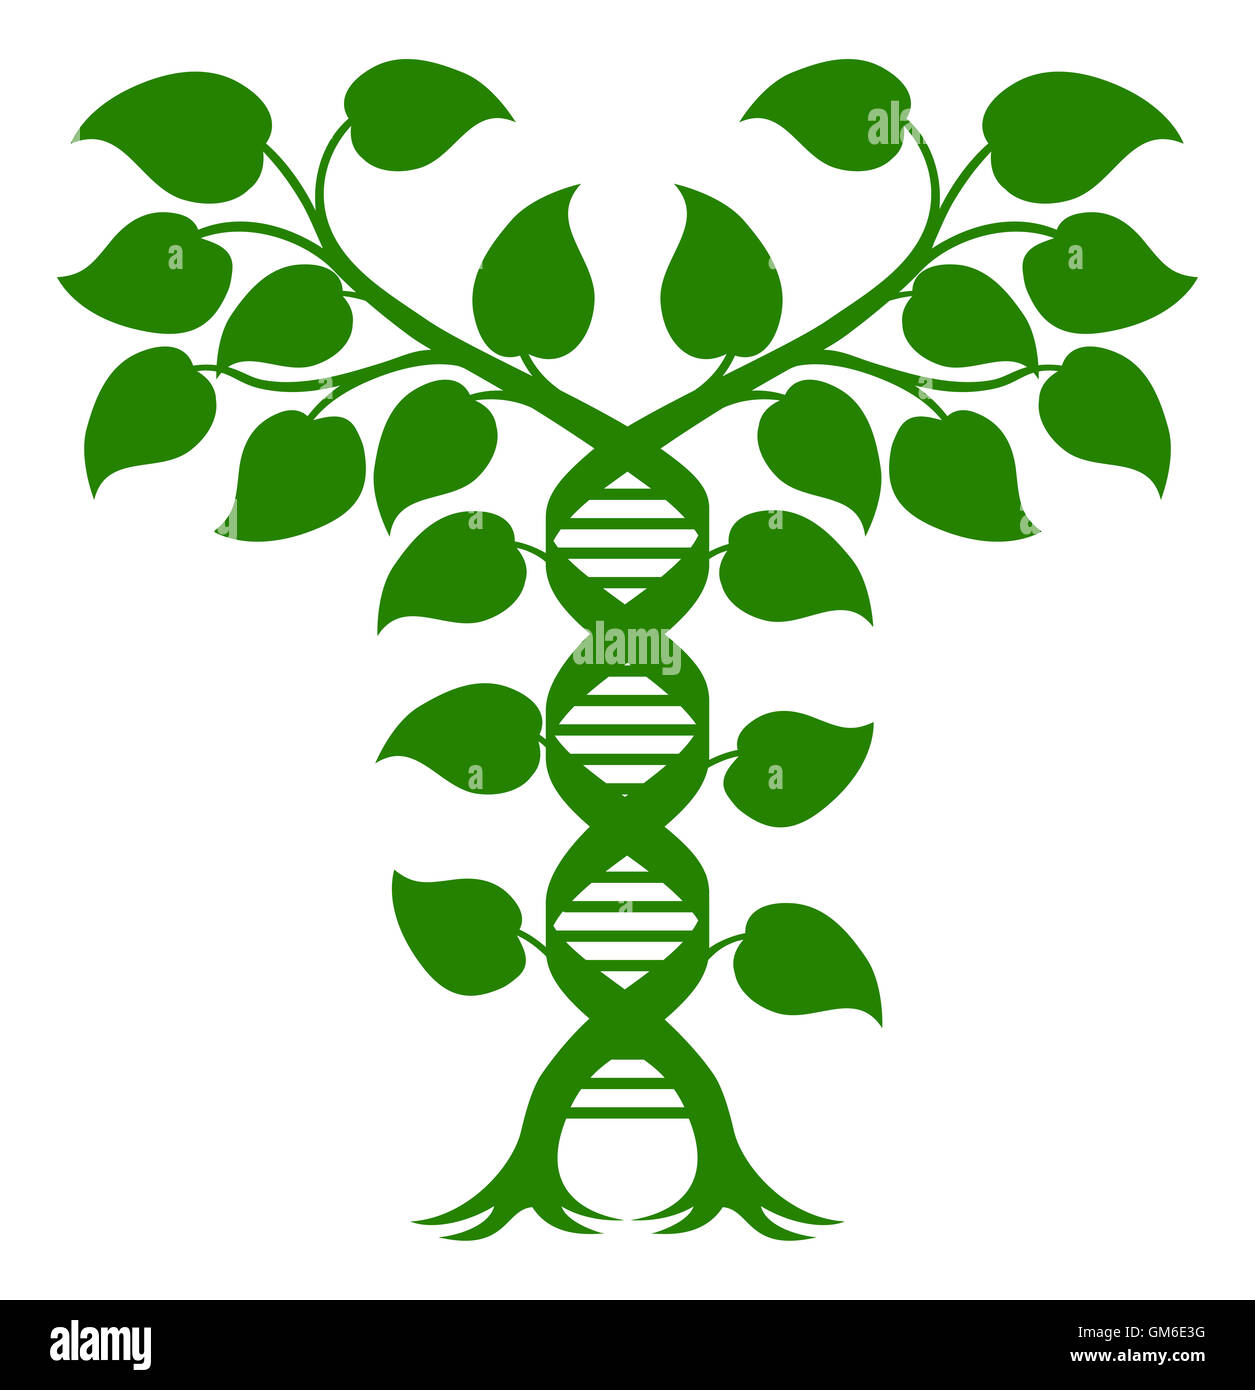 Impianto di DNA a doppia elica concetto, può fare riferimento alla medicina alternativa, ritagliare modificazione genetica o di altre aziende del settore sanitario e medico di tema. Foto Stock